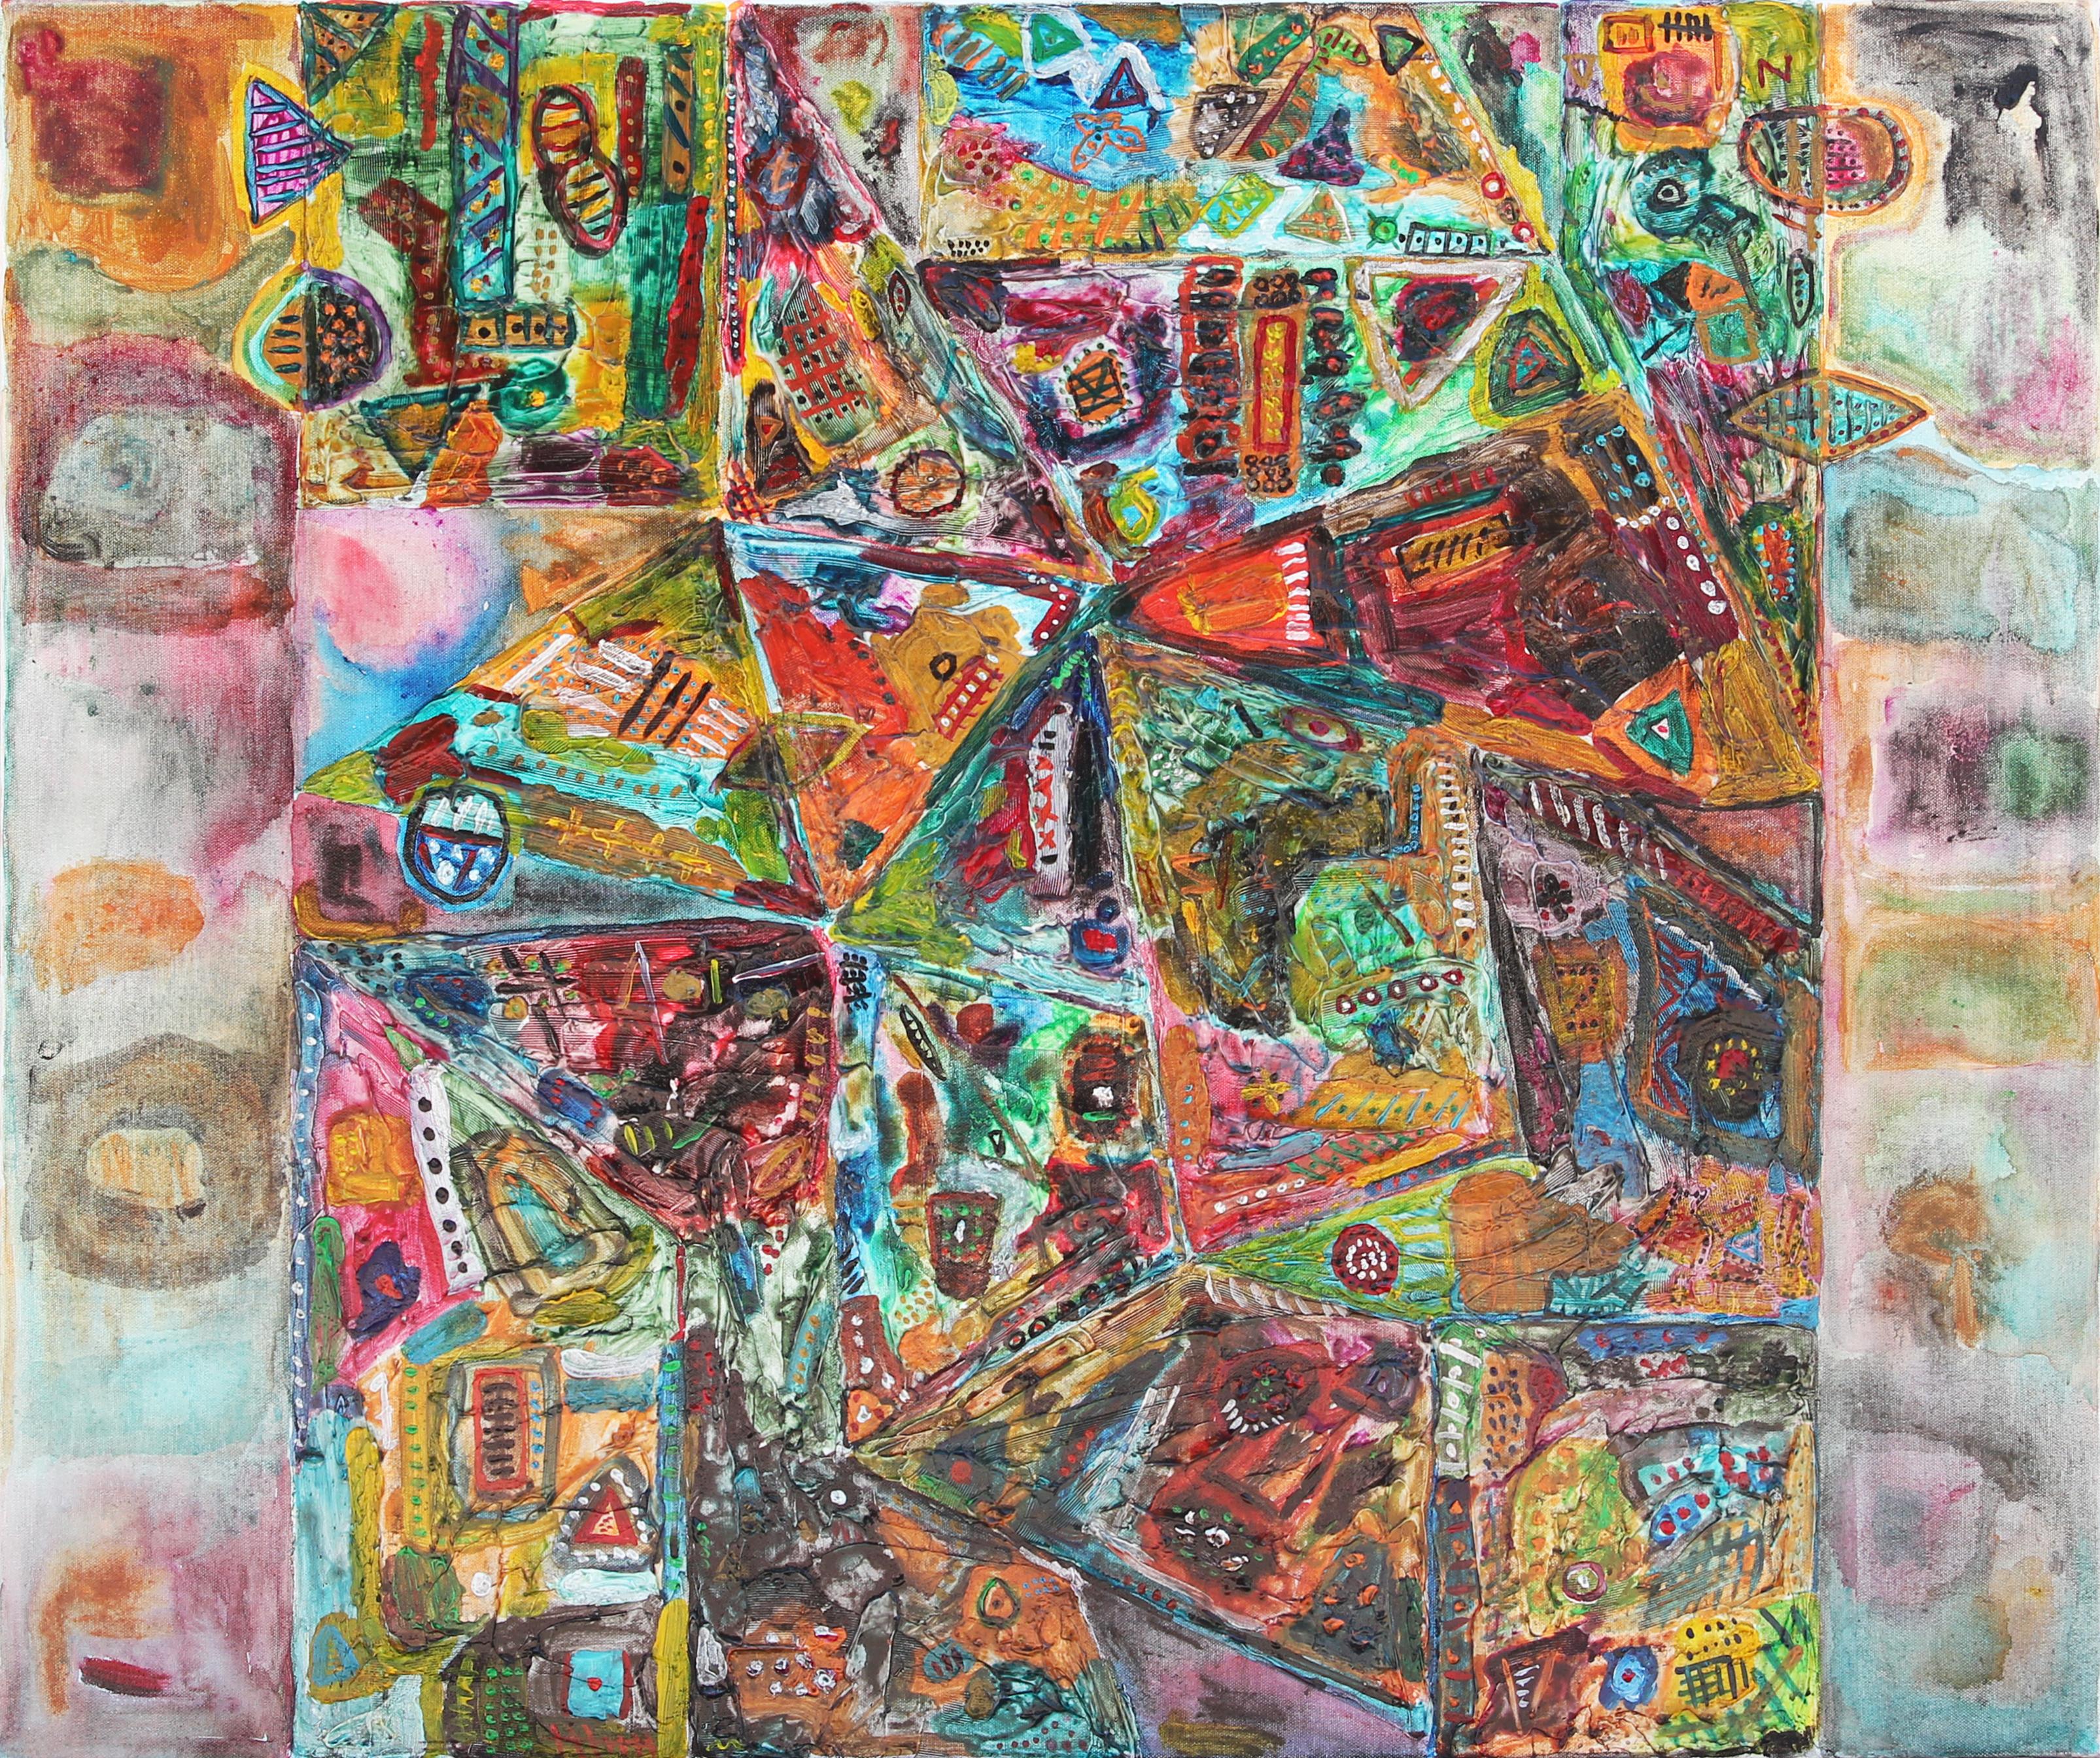 Abstract Painting Paul Reeves - "Put Candy on There" - Peinture abstraite géométrique colorée